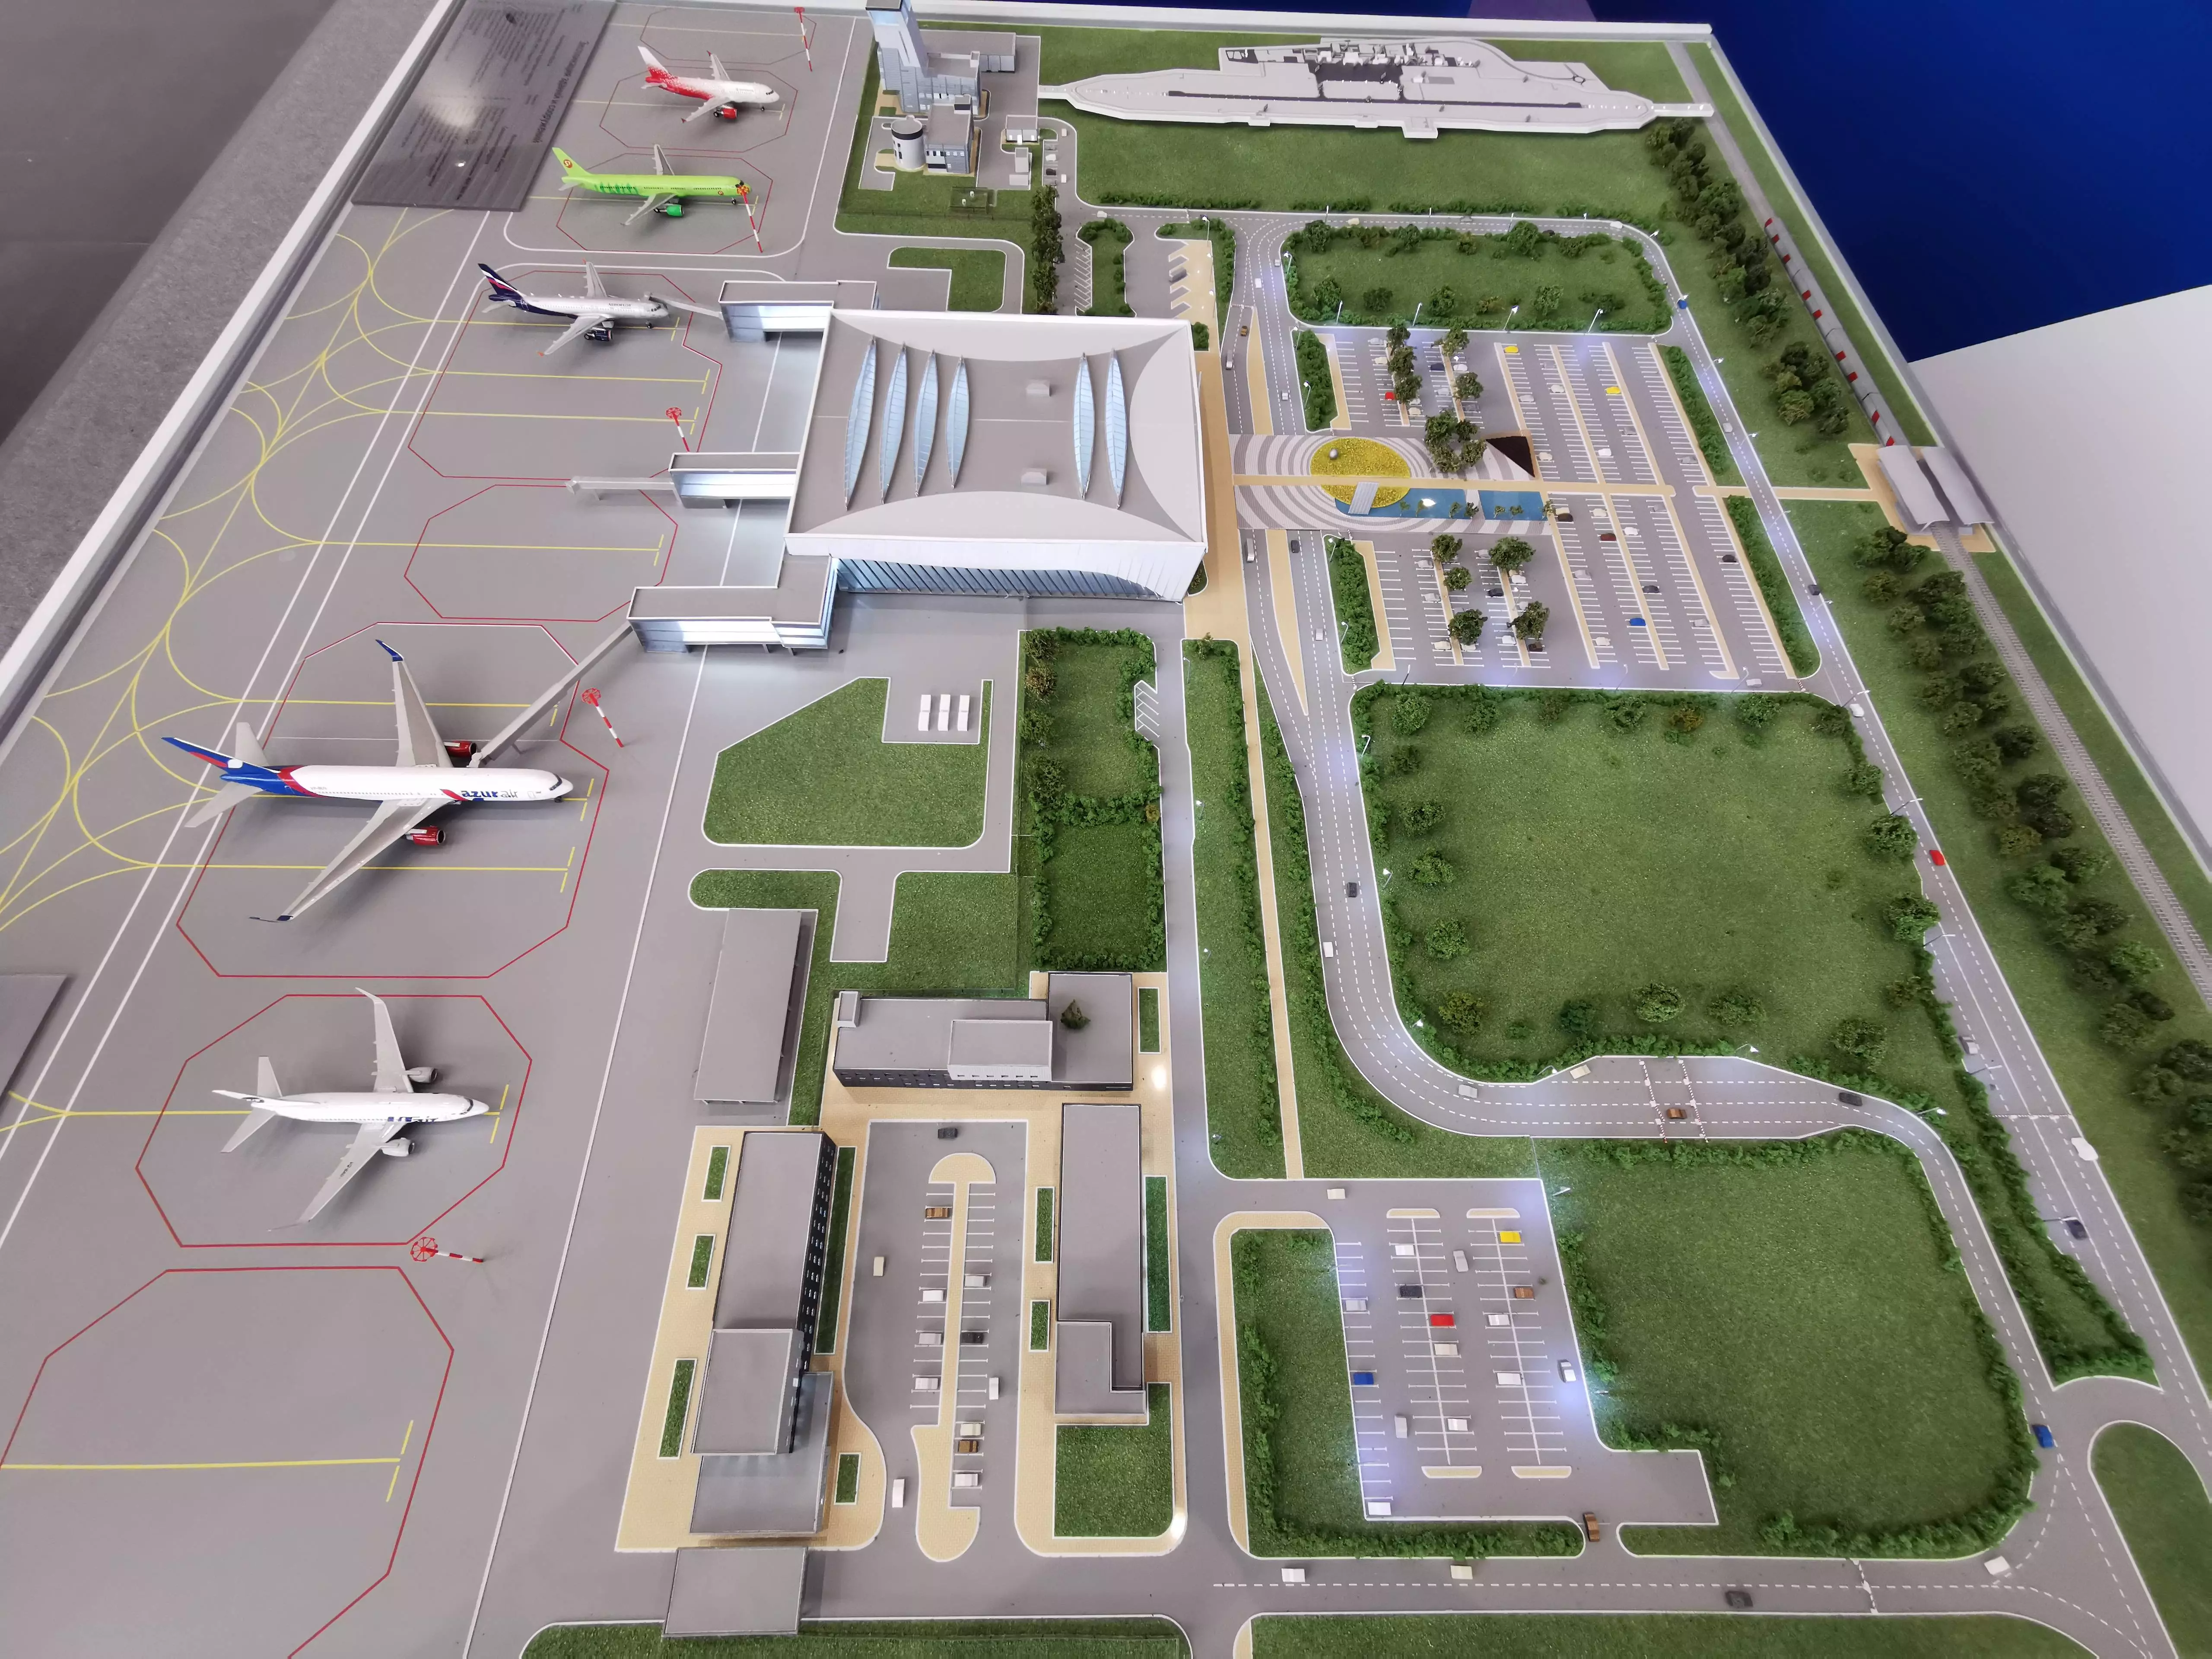 Саратов: новый аэропорт, описание, расположение, маршруты на карте